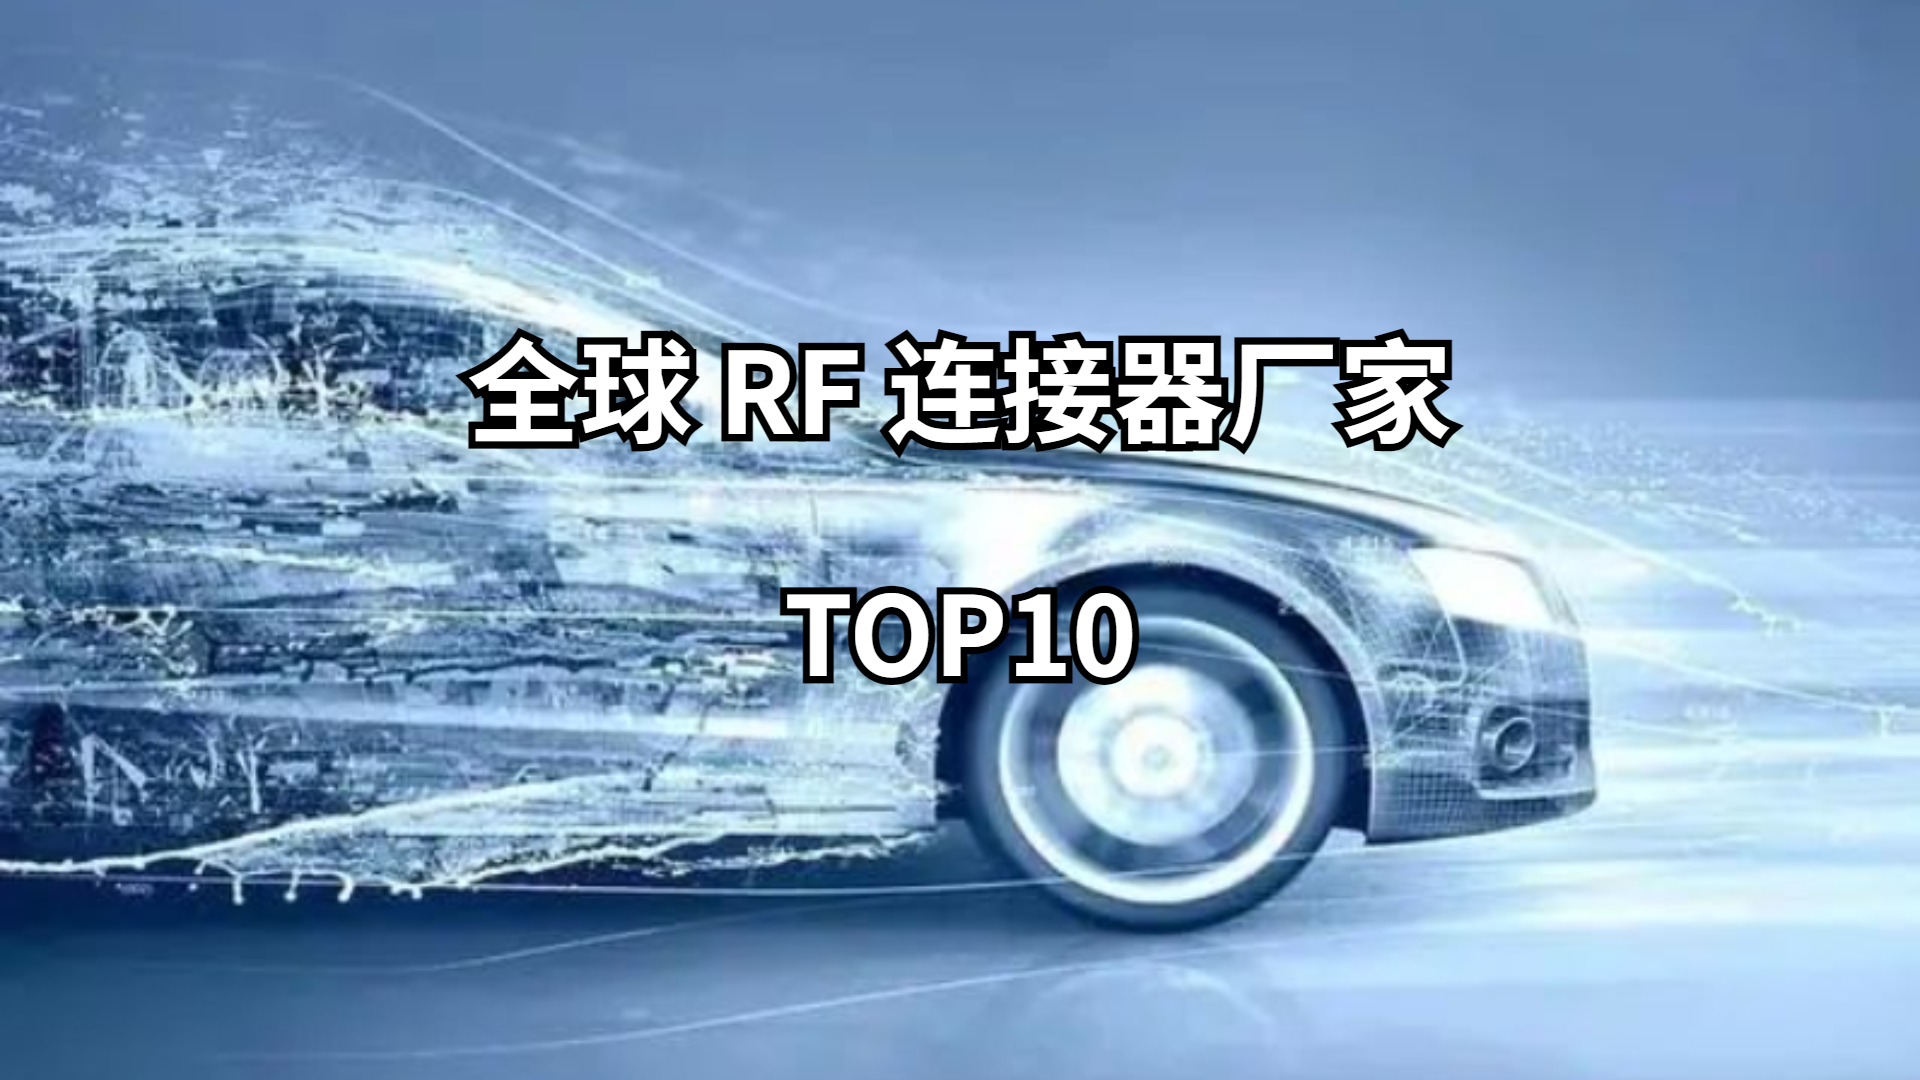 全球RF连接器厂家TOP10排名